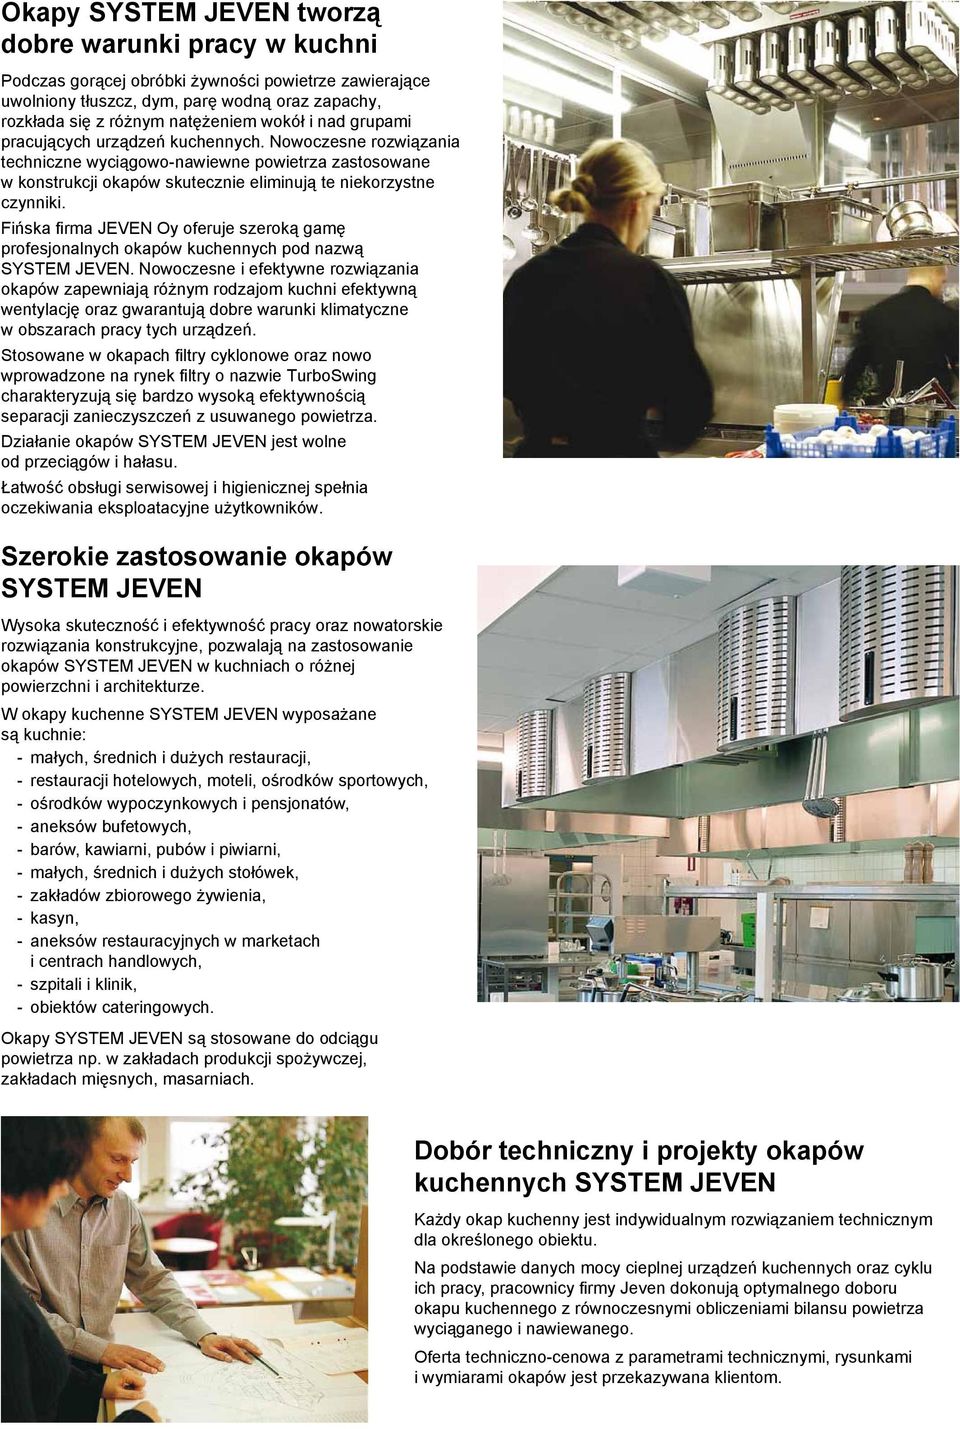 Fińska firma JEVEN Oy oferuje szeroką gamę profesjonalnych okapów kuchennych pod nazwą SYSTEM JEVEN.